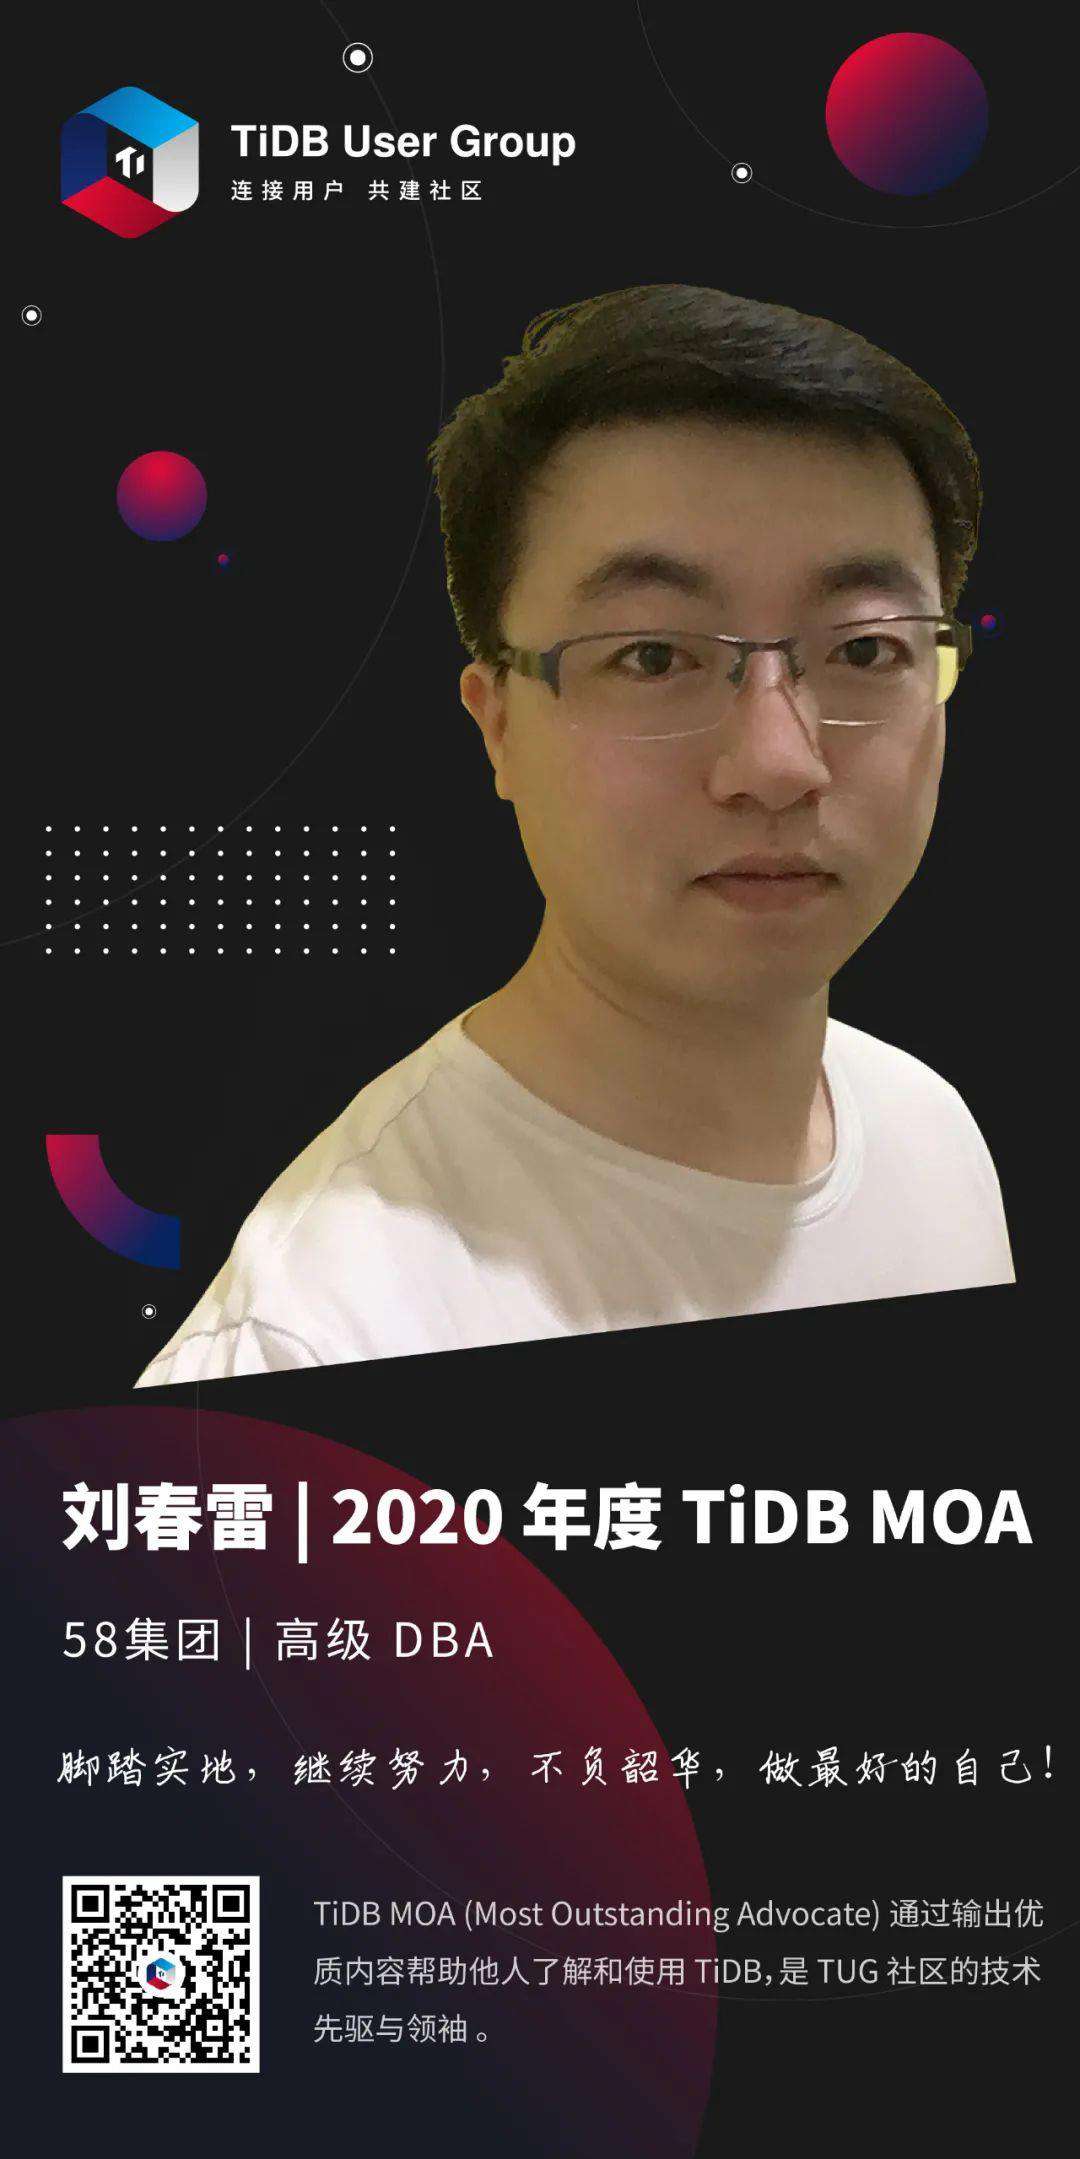 TUG 2021 MOA | 左手技术、右手内容，TUG MOA 刘春雷的榜样之路